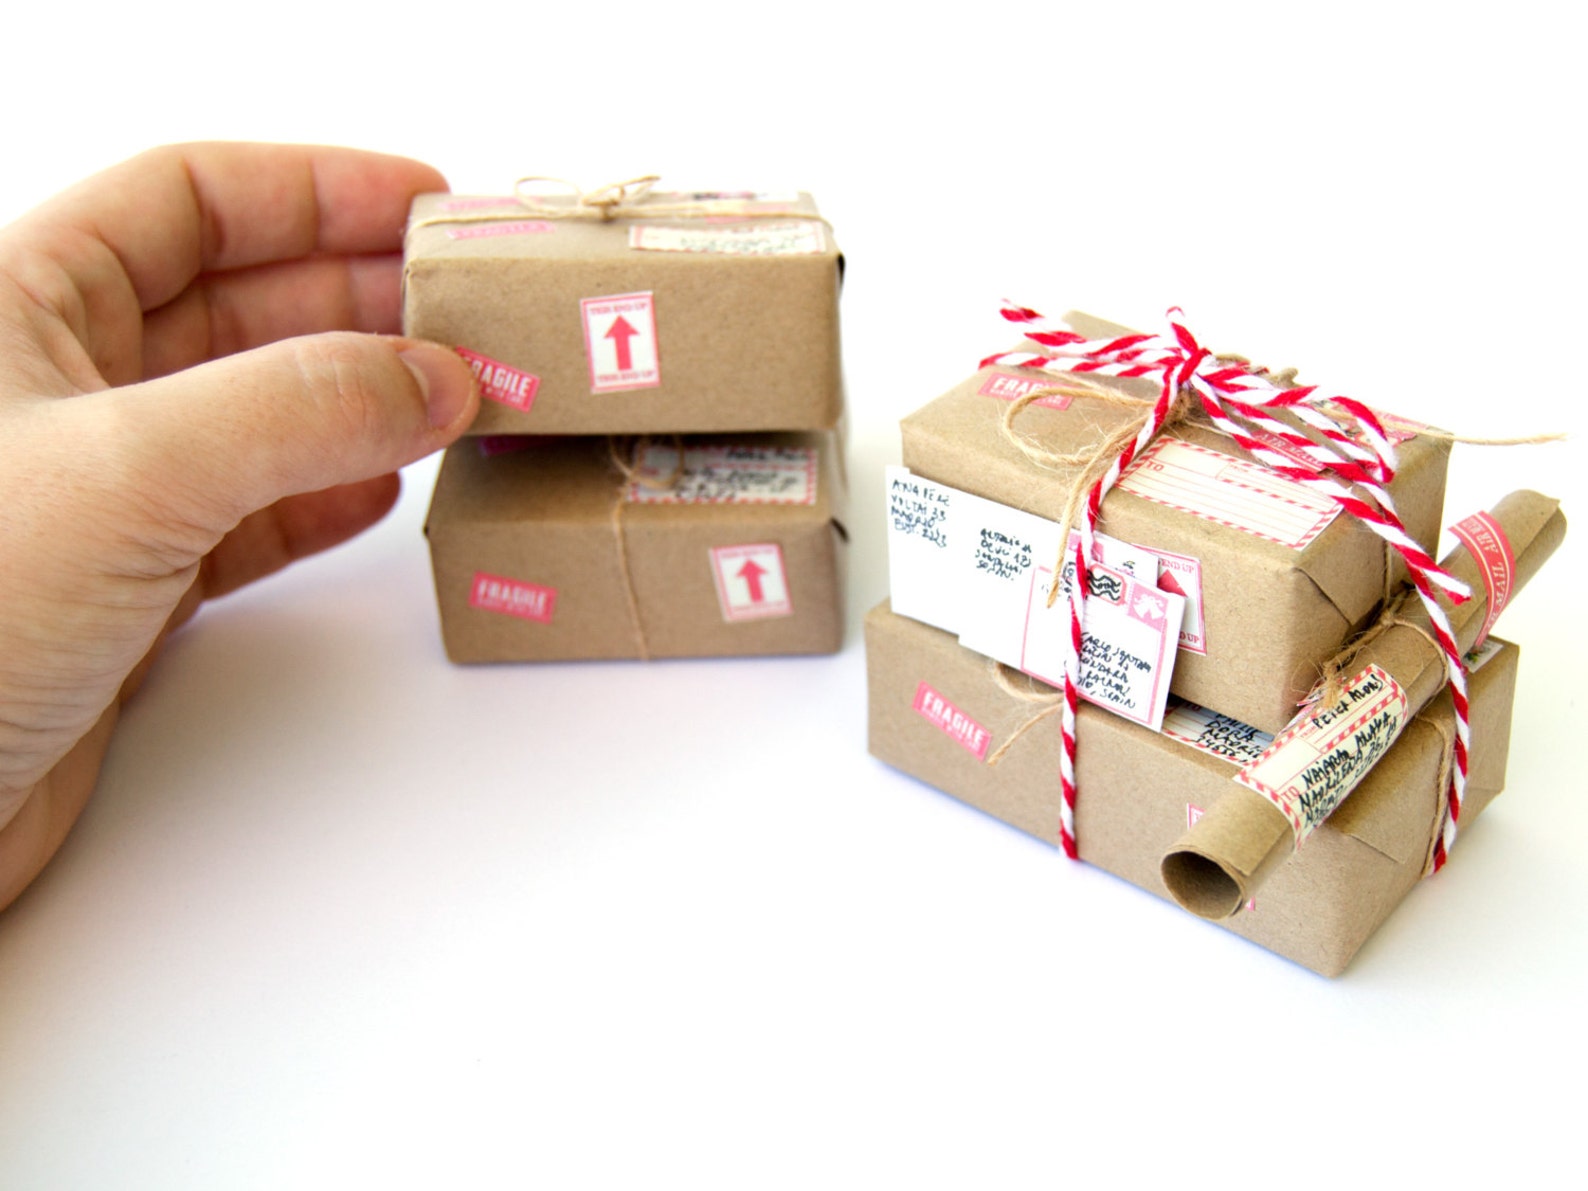 Packaging items. Индивидуальные подарки. Упаковка длдля миниатюр. Персонализация подарков. Маленькая коробка.